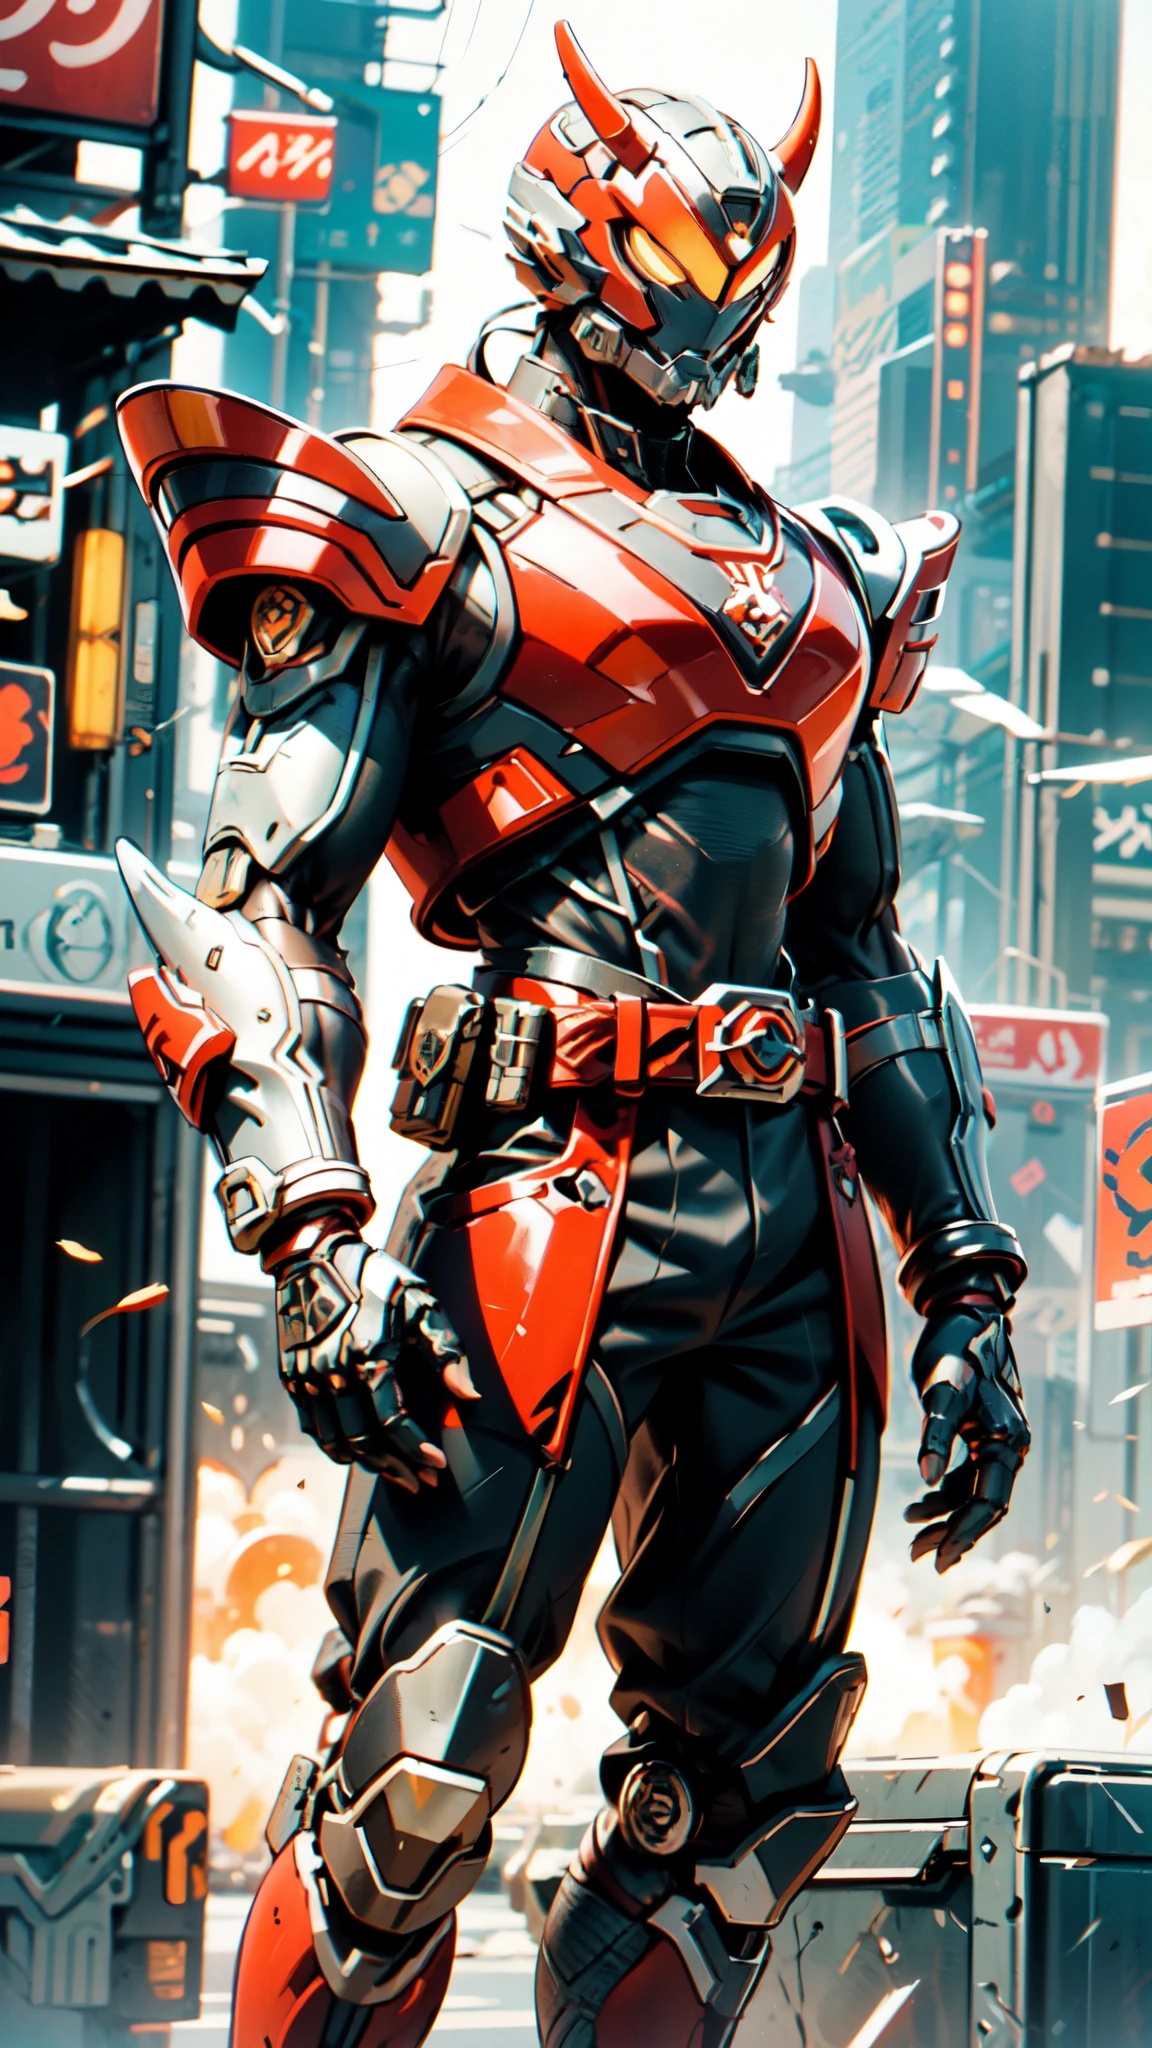 Um homem usando um capacete integral, um traje de combate blindado biotecnológico de estilo fantasia, olhos verdes, (uma armadura torácica em camadas composta), protetores de ombro totalmente fechados, protetores de braço e perna combinando, o cinto é adornado com a marca 666, (o esquema de cores é principalmente vermelho com detalhes em amarelo e branco), o design equilibra peso com agilidade, uma armadura bio-mecha de alta tecnologia, (Conceito de armadura inspirado em Demônio, fique no topo de um arranha-céu em uma cidade futurista de ficção científica), este personagem incorpora um herói blindado de estilo fantasia-surreal finamente trabalhado no estilo anime, estilo de arte mangá requintado e maduro, (dano de batalha, elemento, Plasma, energia, a armadura brilha), ((macho:1.5)), metálico, material de textura real, Dramático, alta definição, melhor qualidade, alta resolução, ultra-detalhado, pintura ultrafina, extremamente delicado, profissional, proporções corporais perfeitas, proporção áurea, anatomicamente correto, rosto simétrico, olhos e rosto extremamente detalhados, olhos de alta qualidade, criatividade, Foto CRU, Ultra HD, 32K, Luz natural, iluminação cinematográfica, Obra de arte-anatomy-perfect, Obra de arte:1.5